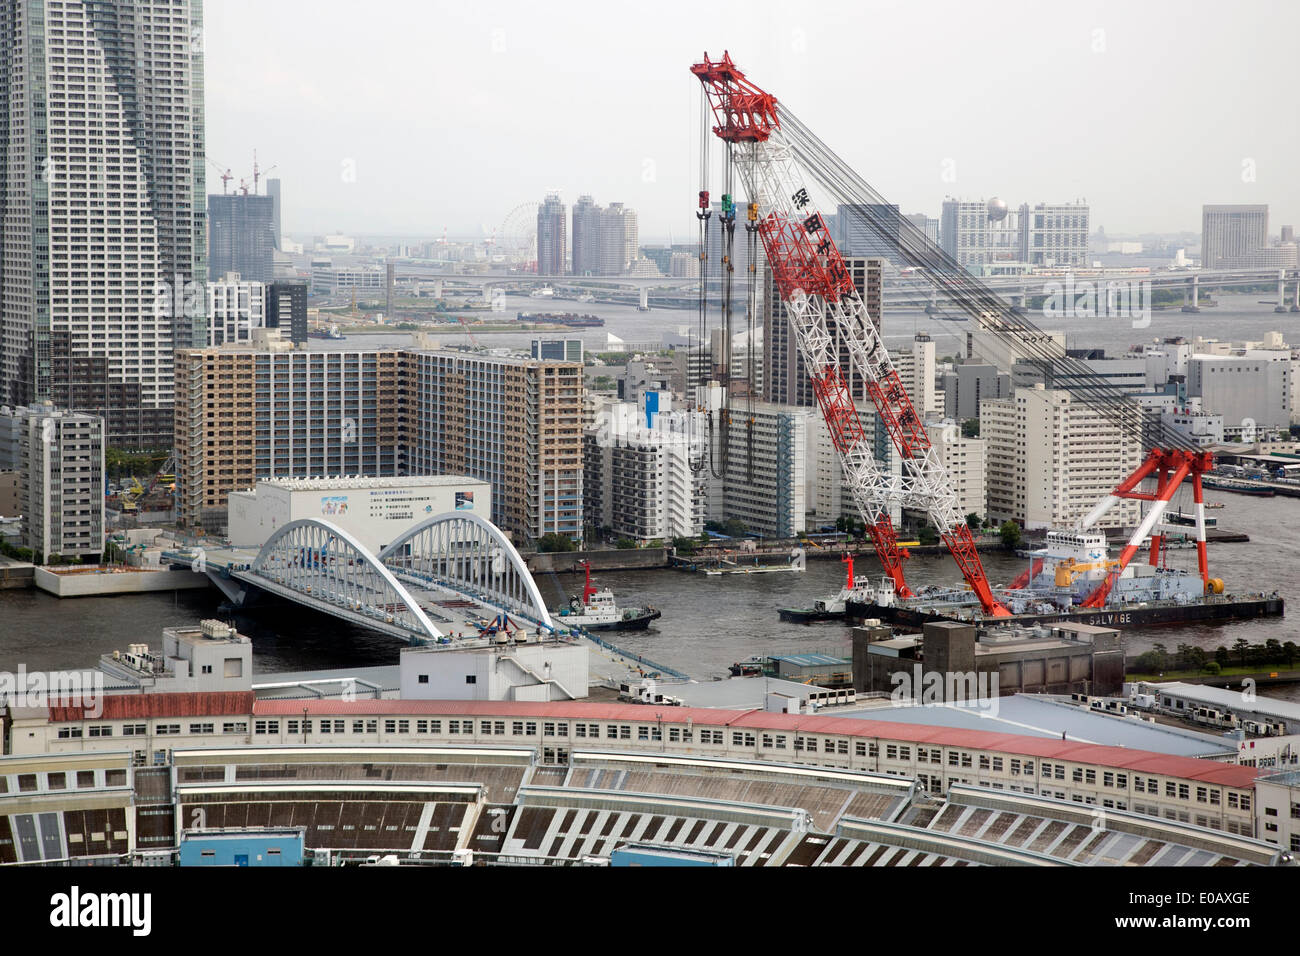 May 8th, 2014, Tokyo, Japon : nouvelle de 120 mètres de long pont construit  sur la rivière Sumida en préparation pour le Jeux Olympiques de Tokyo 2020.  Un nouveau 120 mètres de